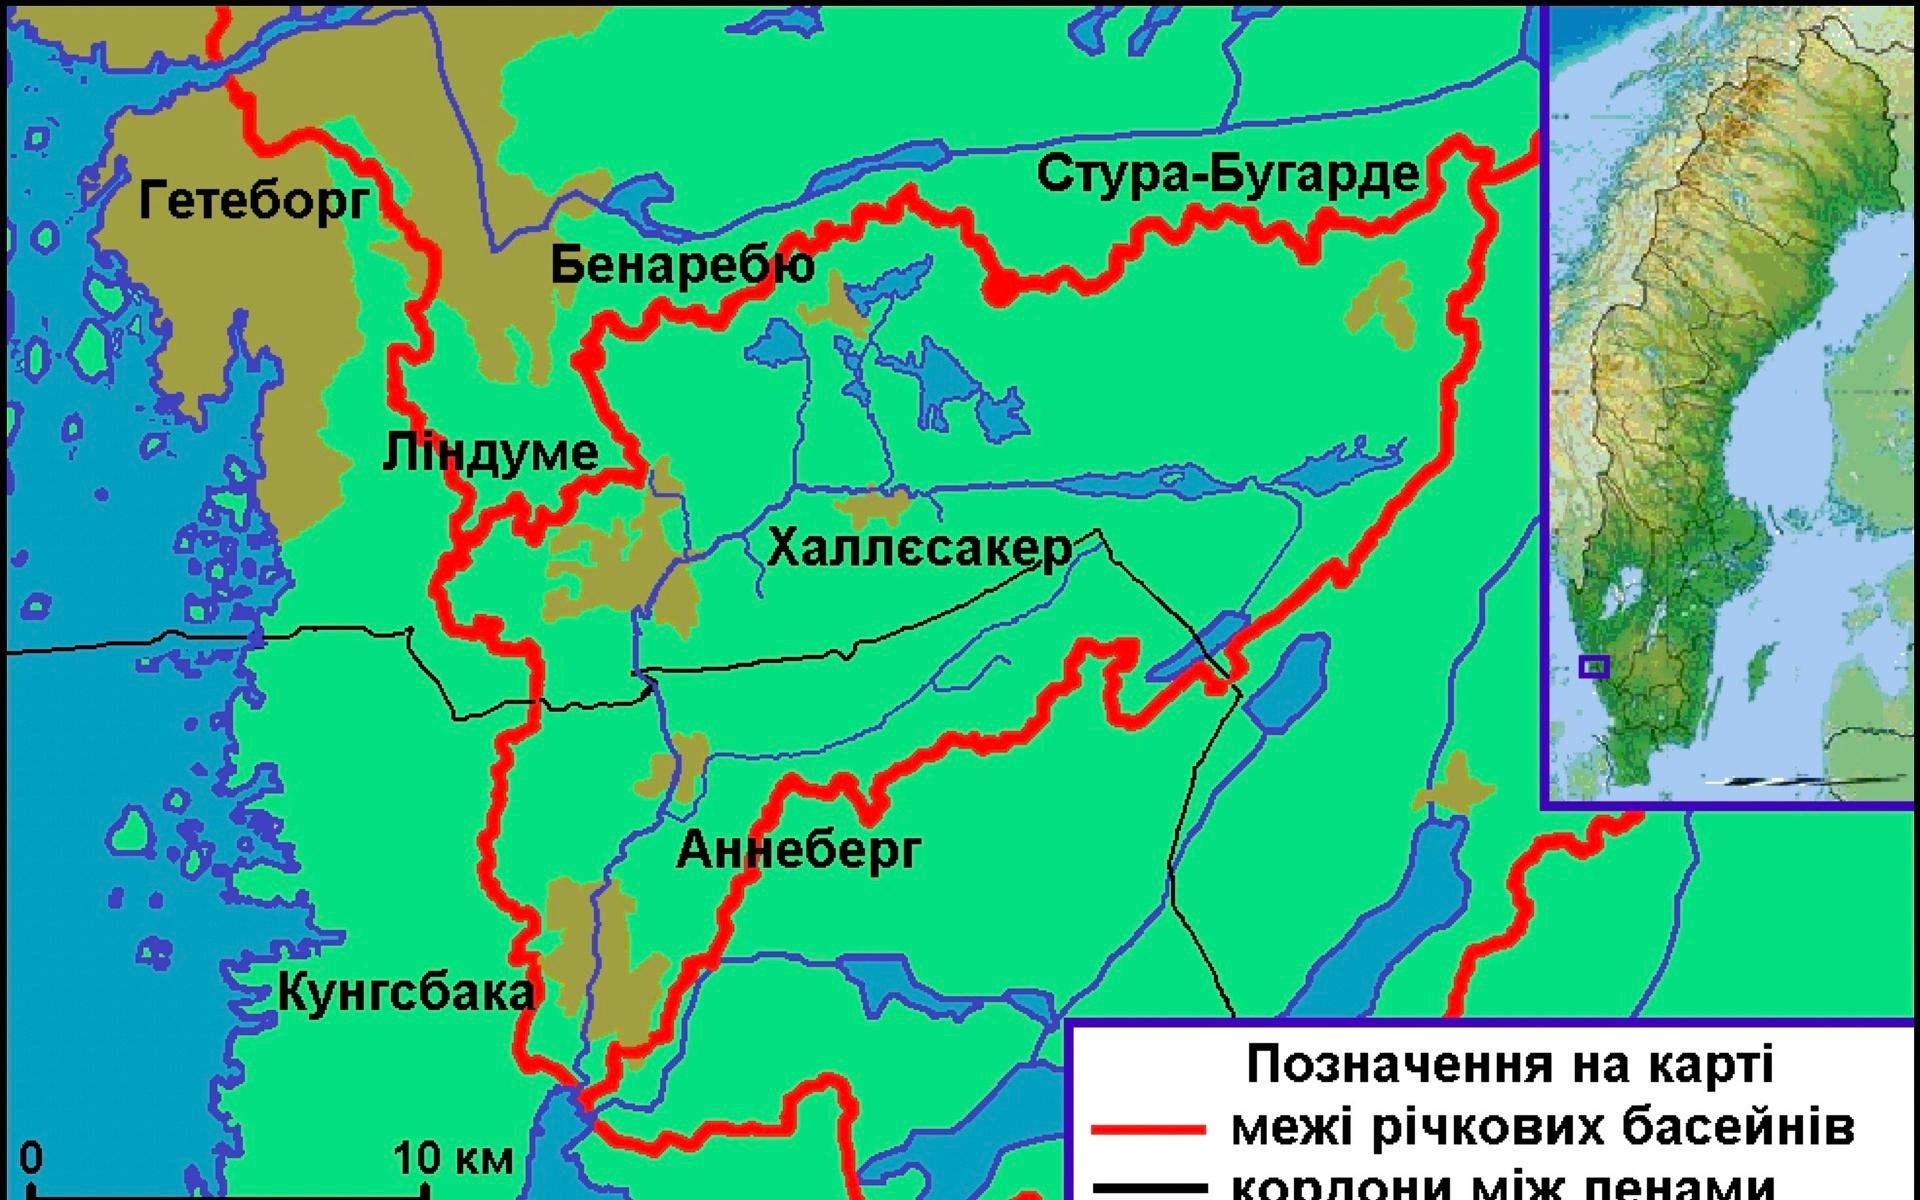 Kartan över Kungsbackaån. Plötsligt översatt till ryska. Men det kan även vara vitryska.